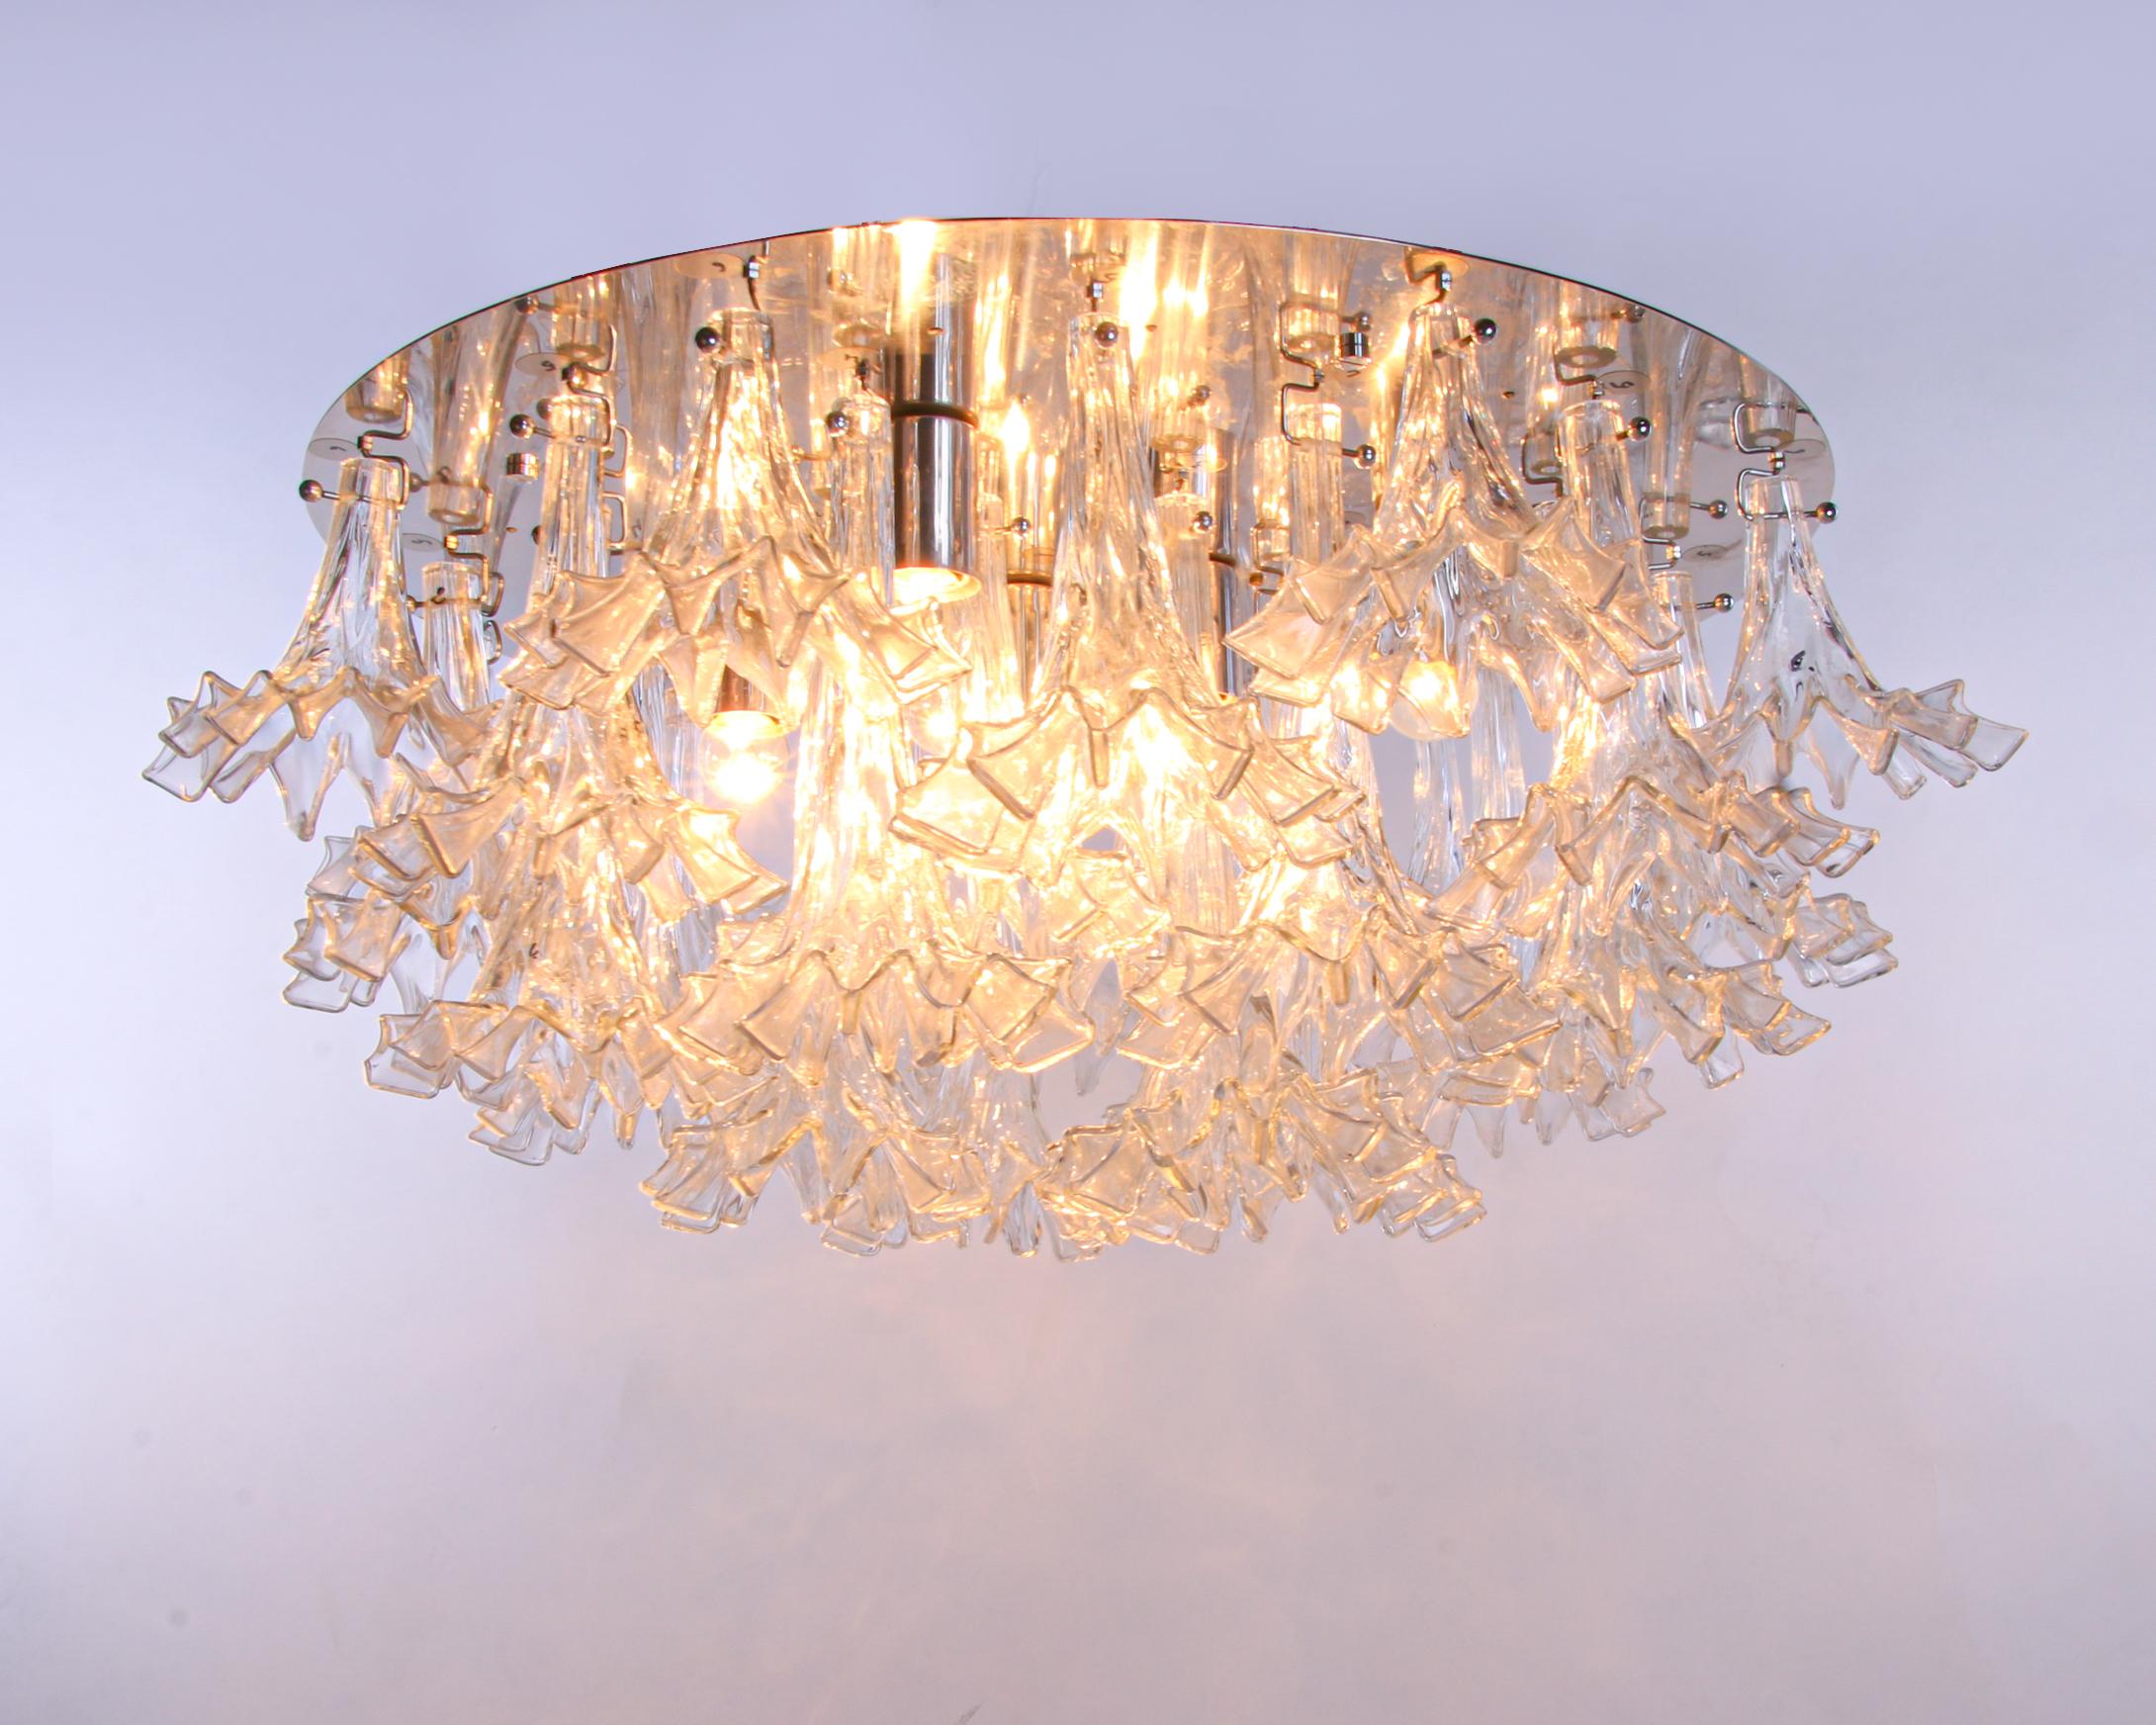 Spectaculaire grand lustre encastré modèle 'Arethusa' avec des fleurs en verre de Murano fabriquées individuellement à la main sur une structure en métal chromé. Le lustre éclaire magnifiquement et offre beaucoup de lumière. Gemme de l'époque. Avec